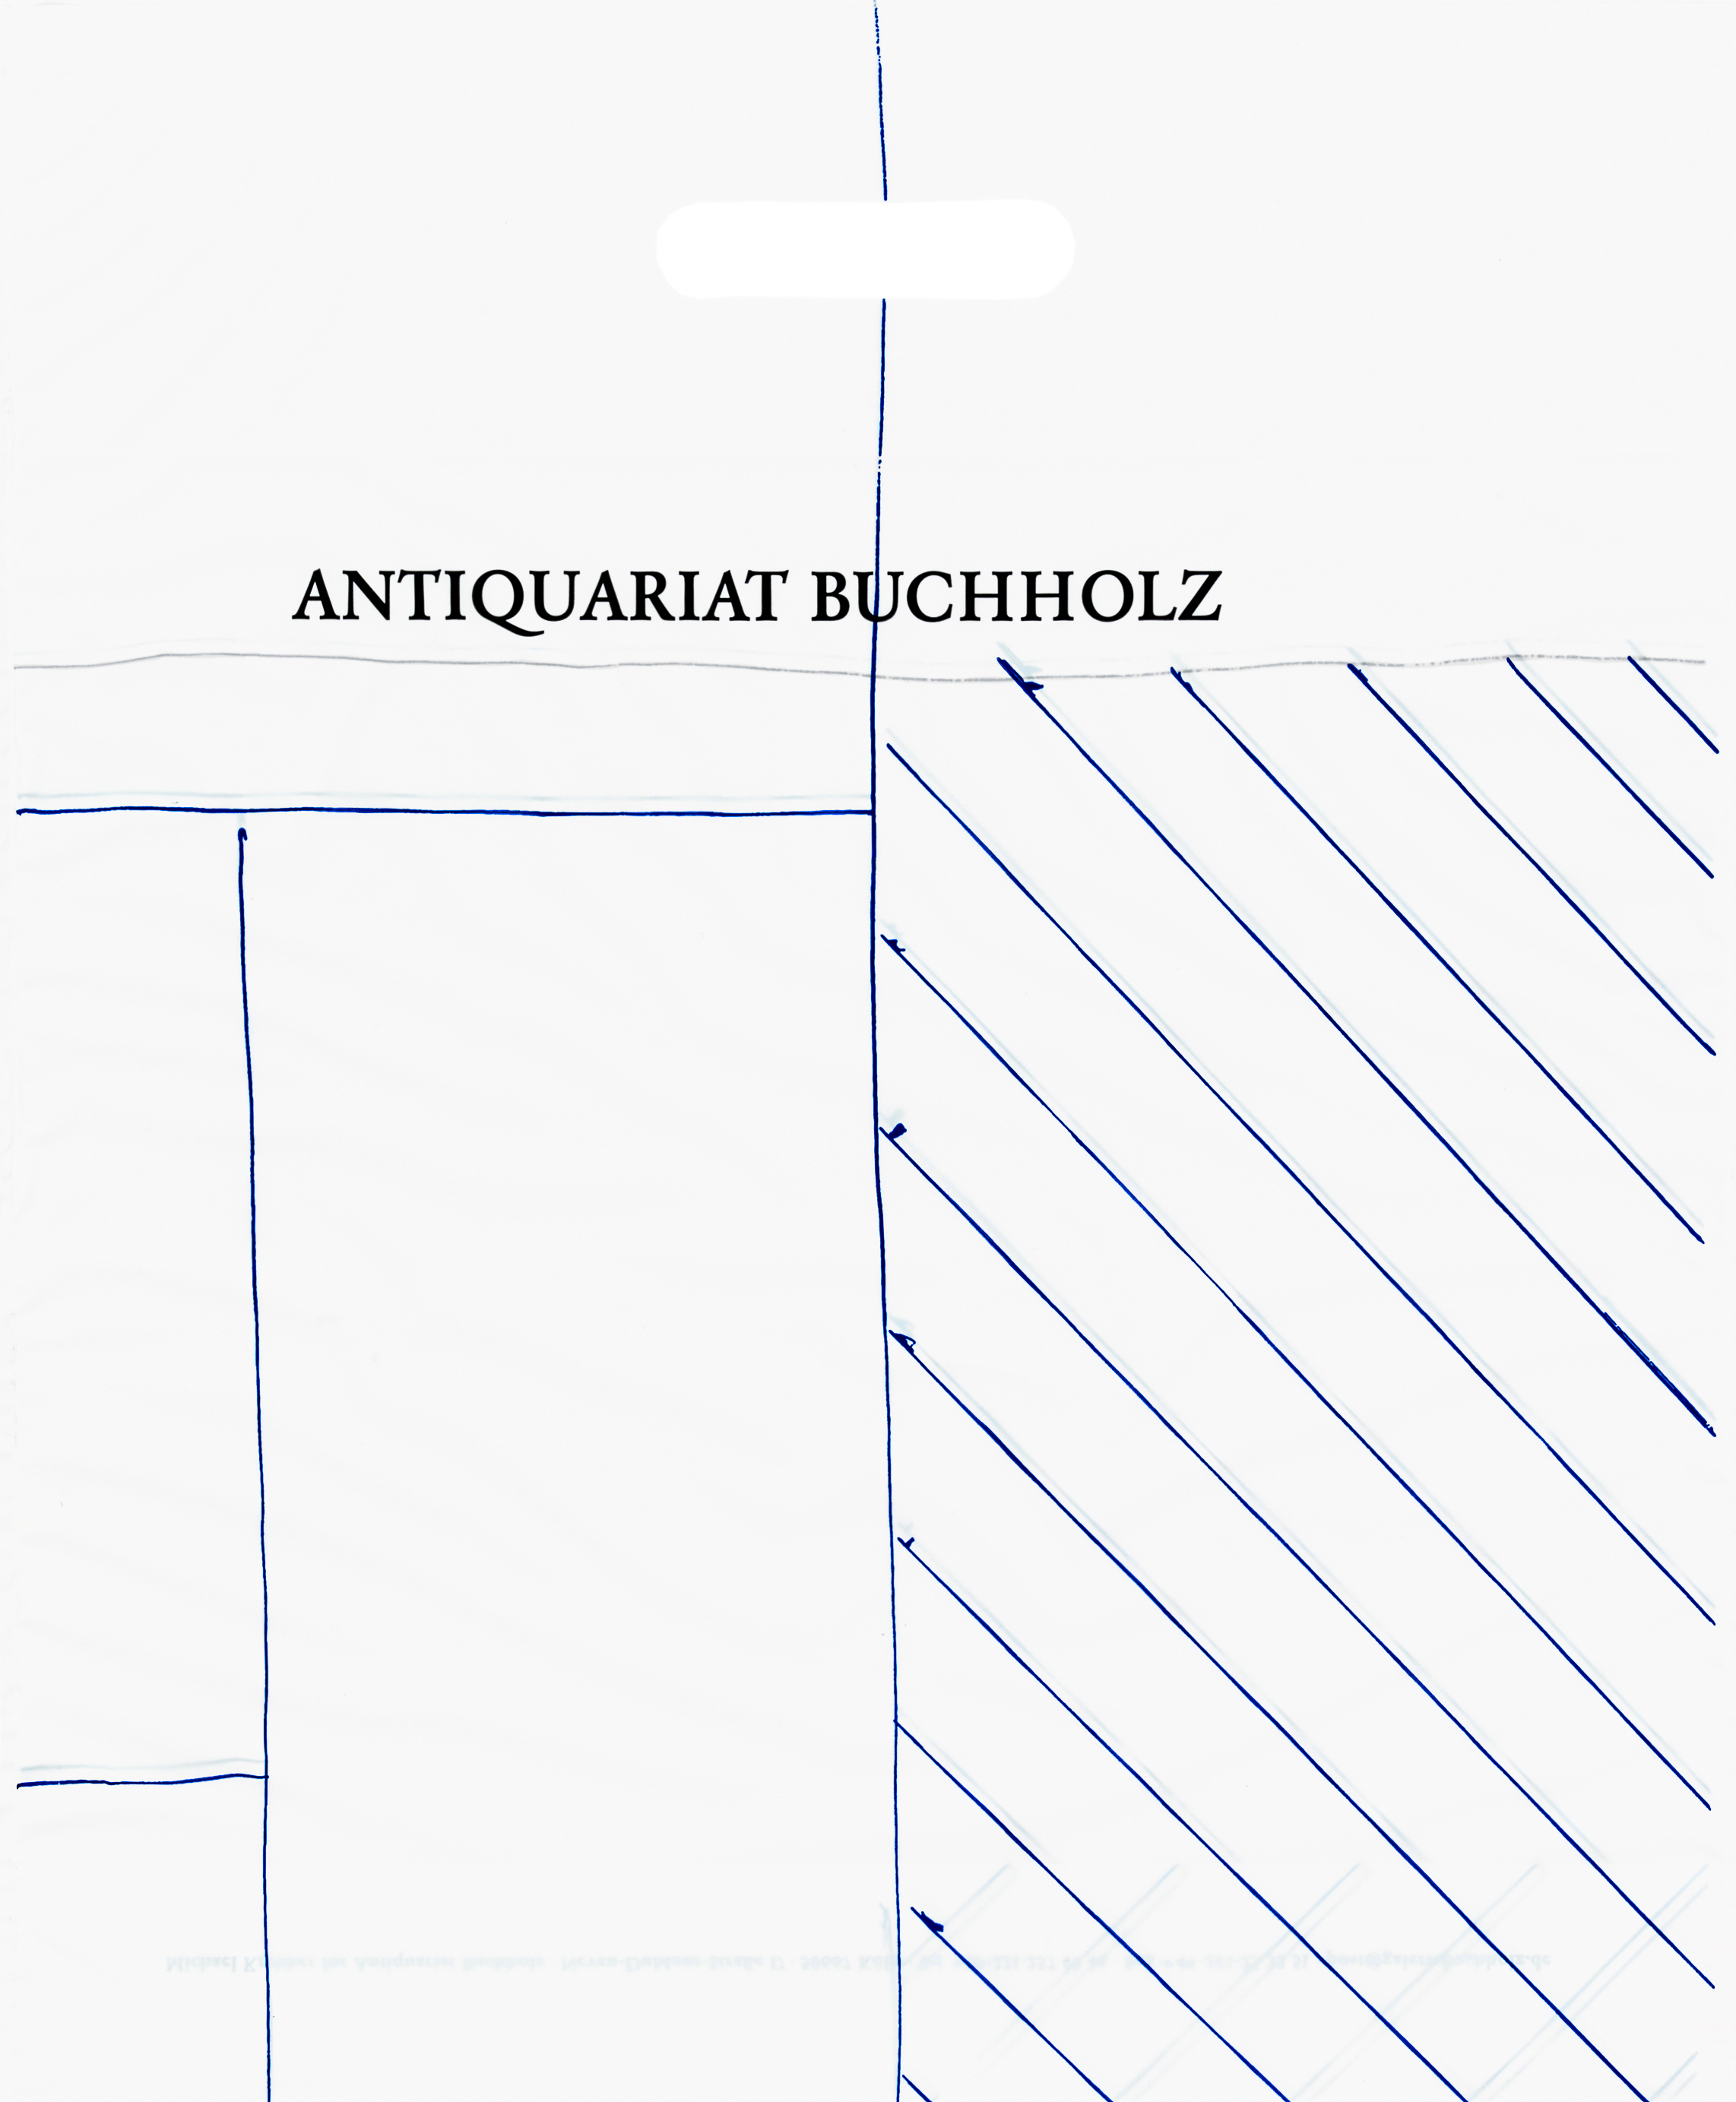 Michael Krebber – 2017, design for plastic shopping bag for Antiquariat Buchholz
44,5 x 38 cm – 